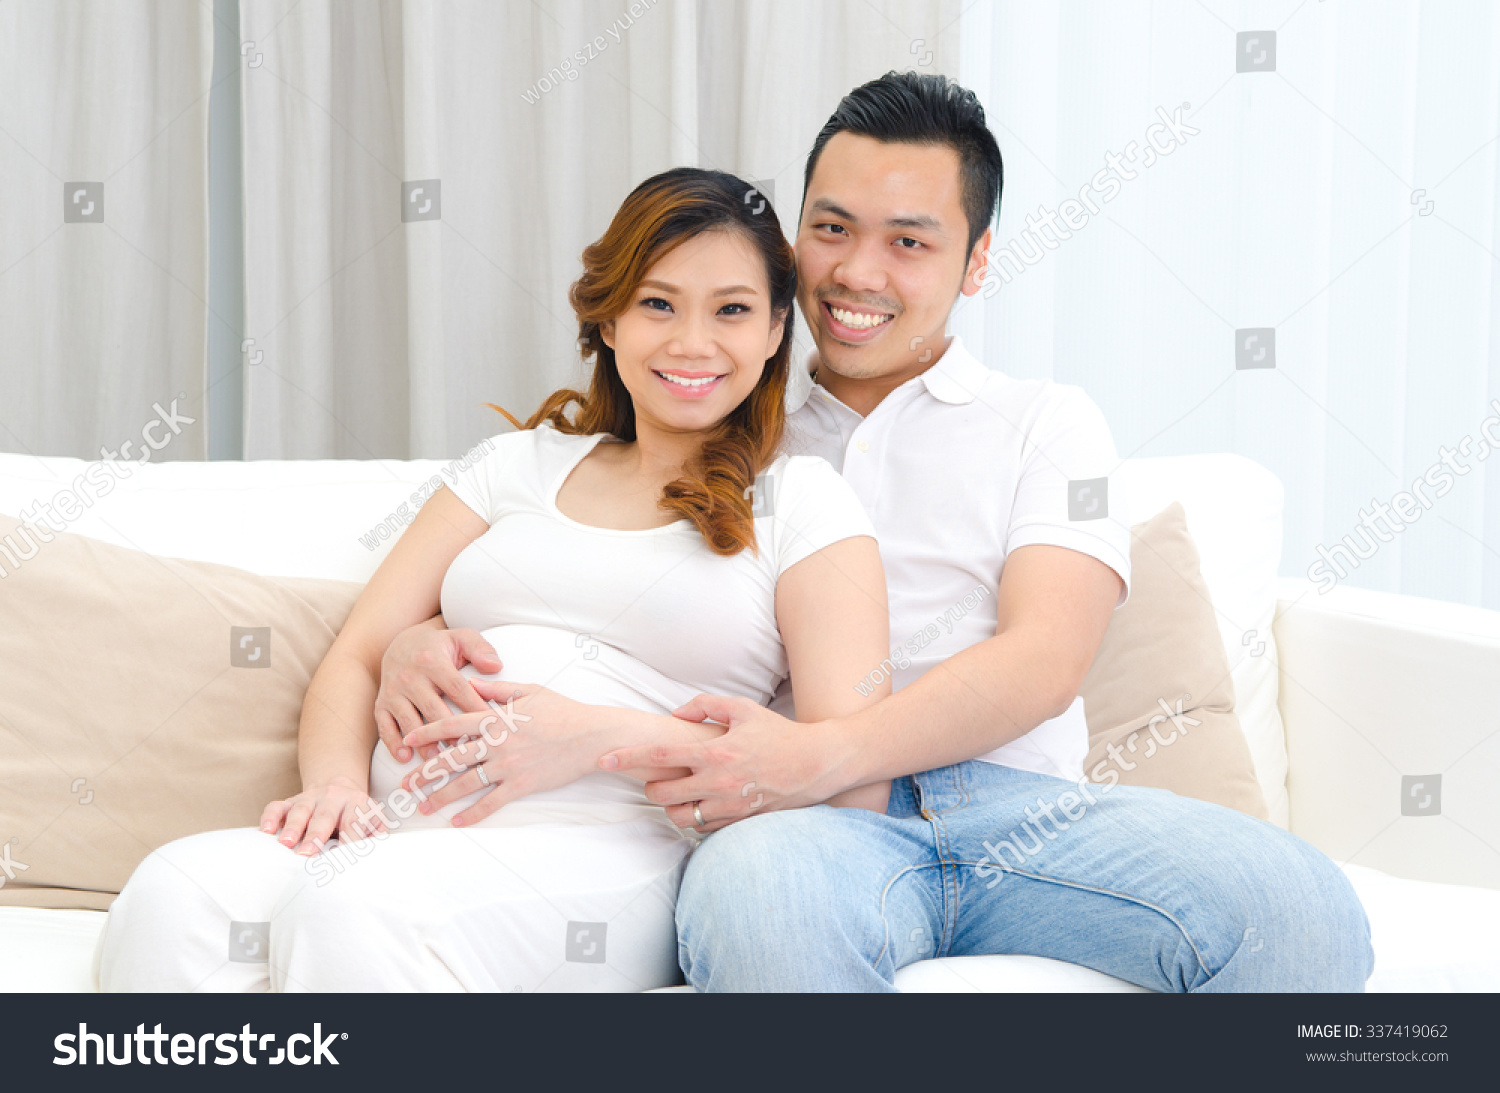 室内的画像美丽的亚洲孕妇和她的丈夫 - 人物 